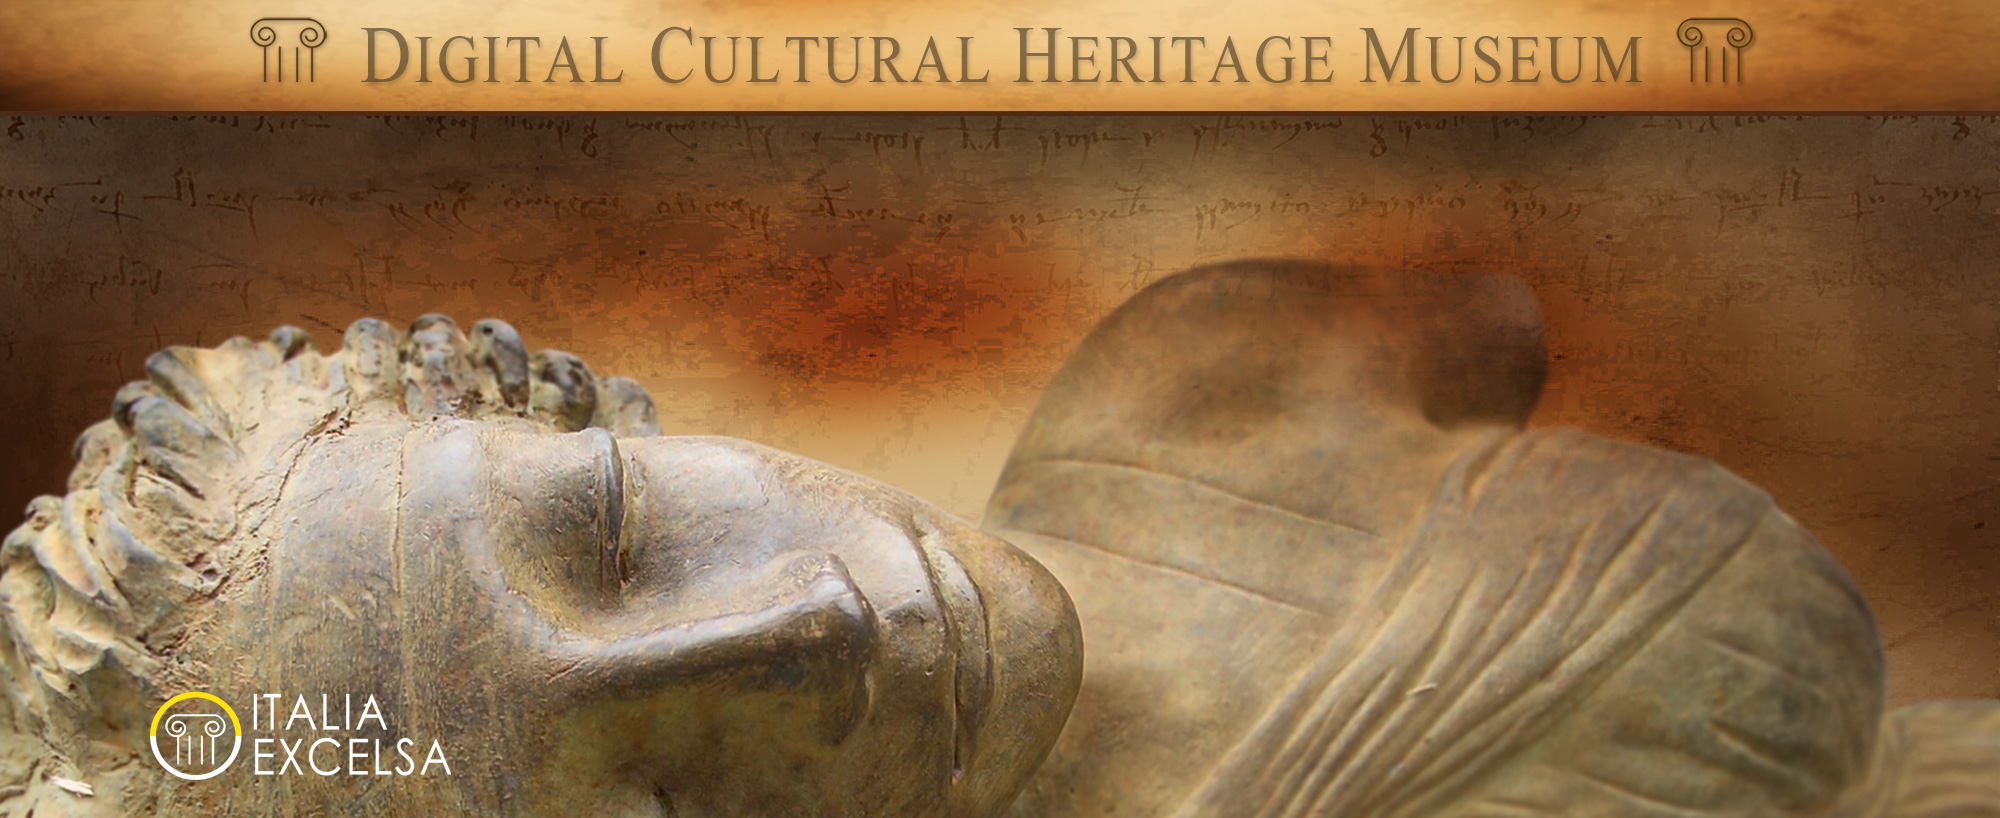 Digital Cultural Heritage Museum